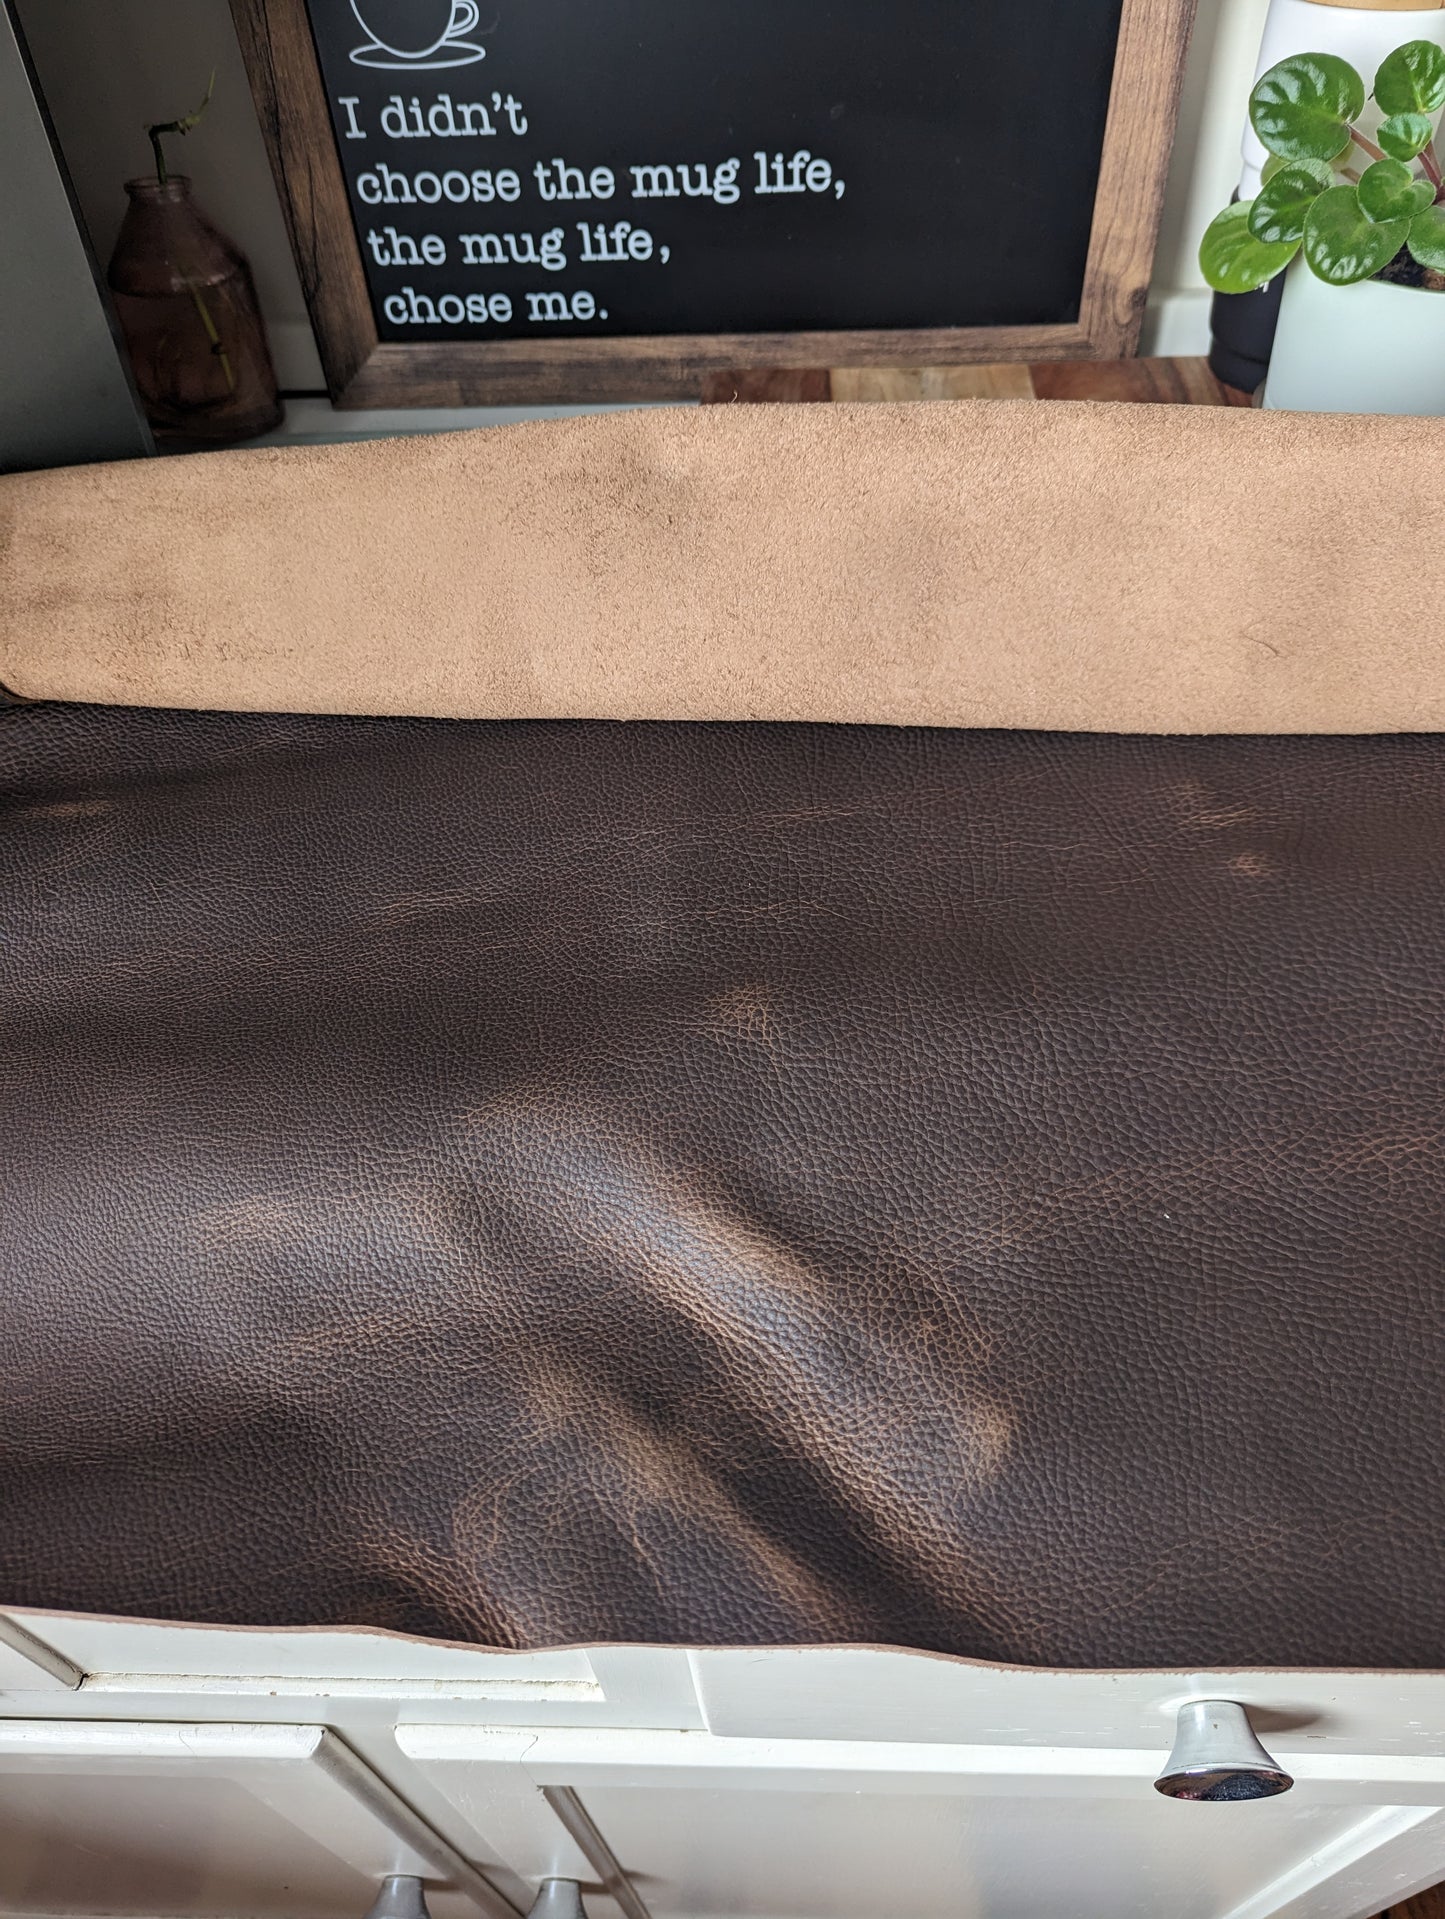 Kodiak Leather